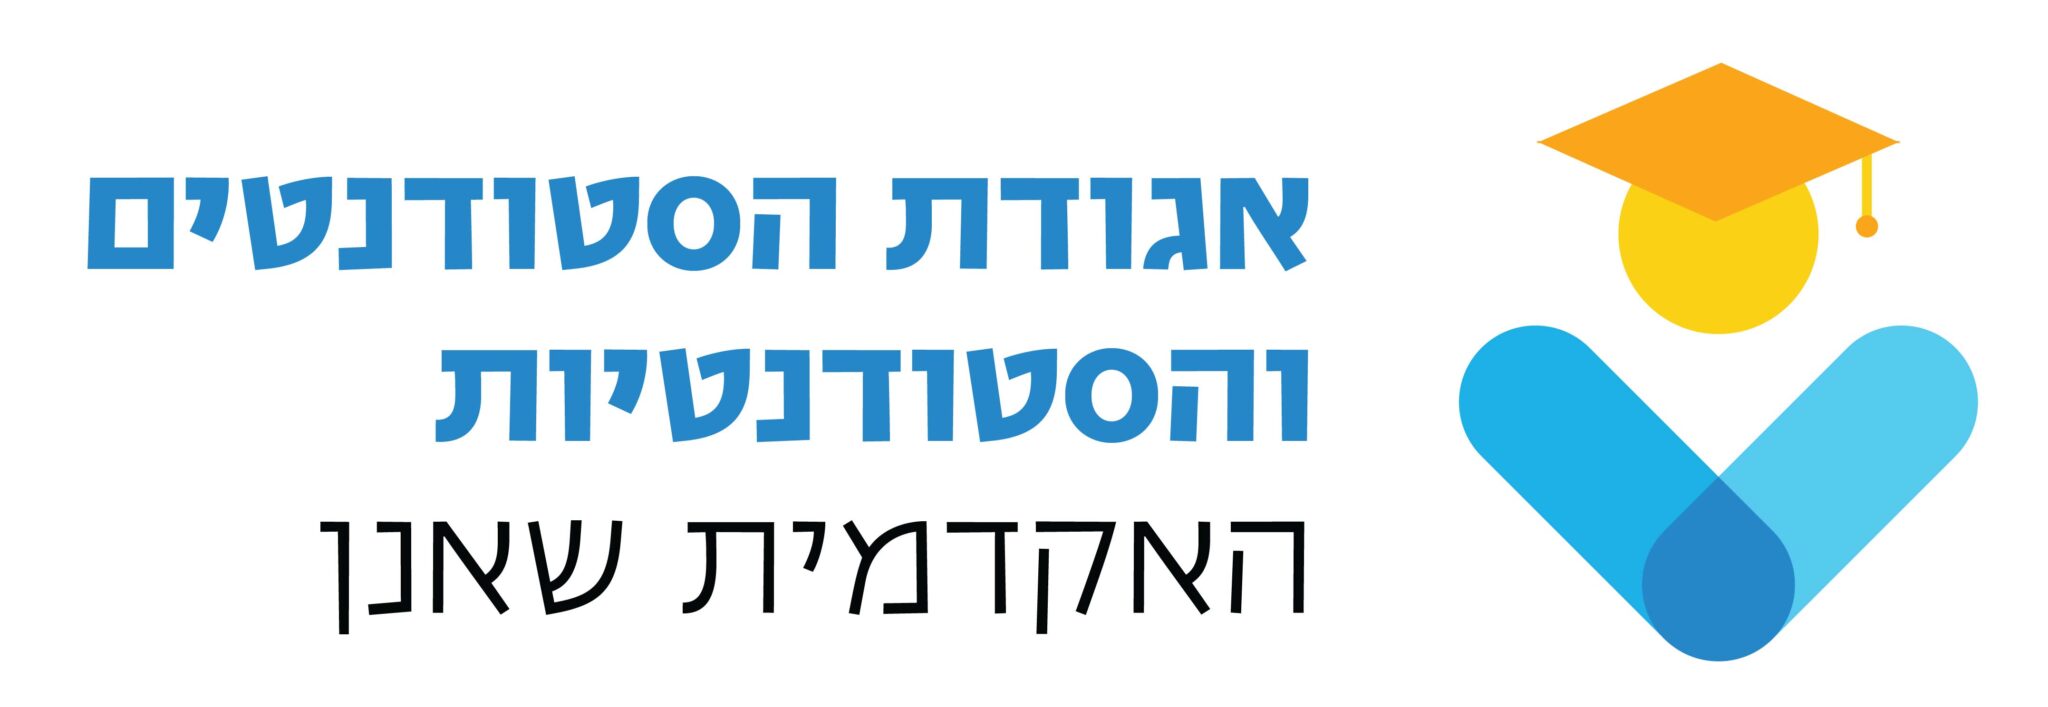 לוגו אגודת הסטודנטים והסטודנטיות של שאנן